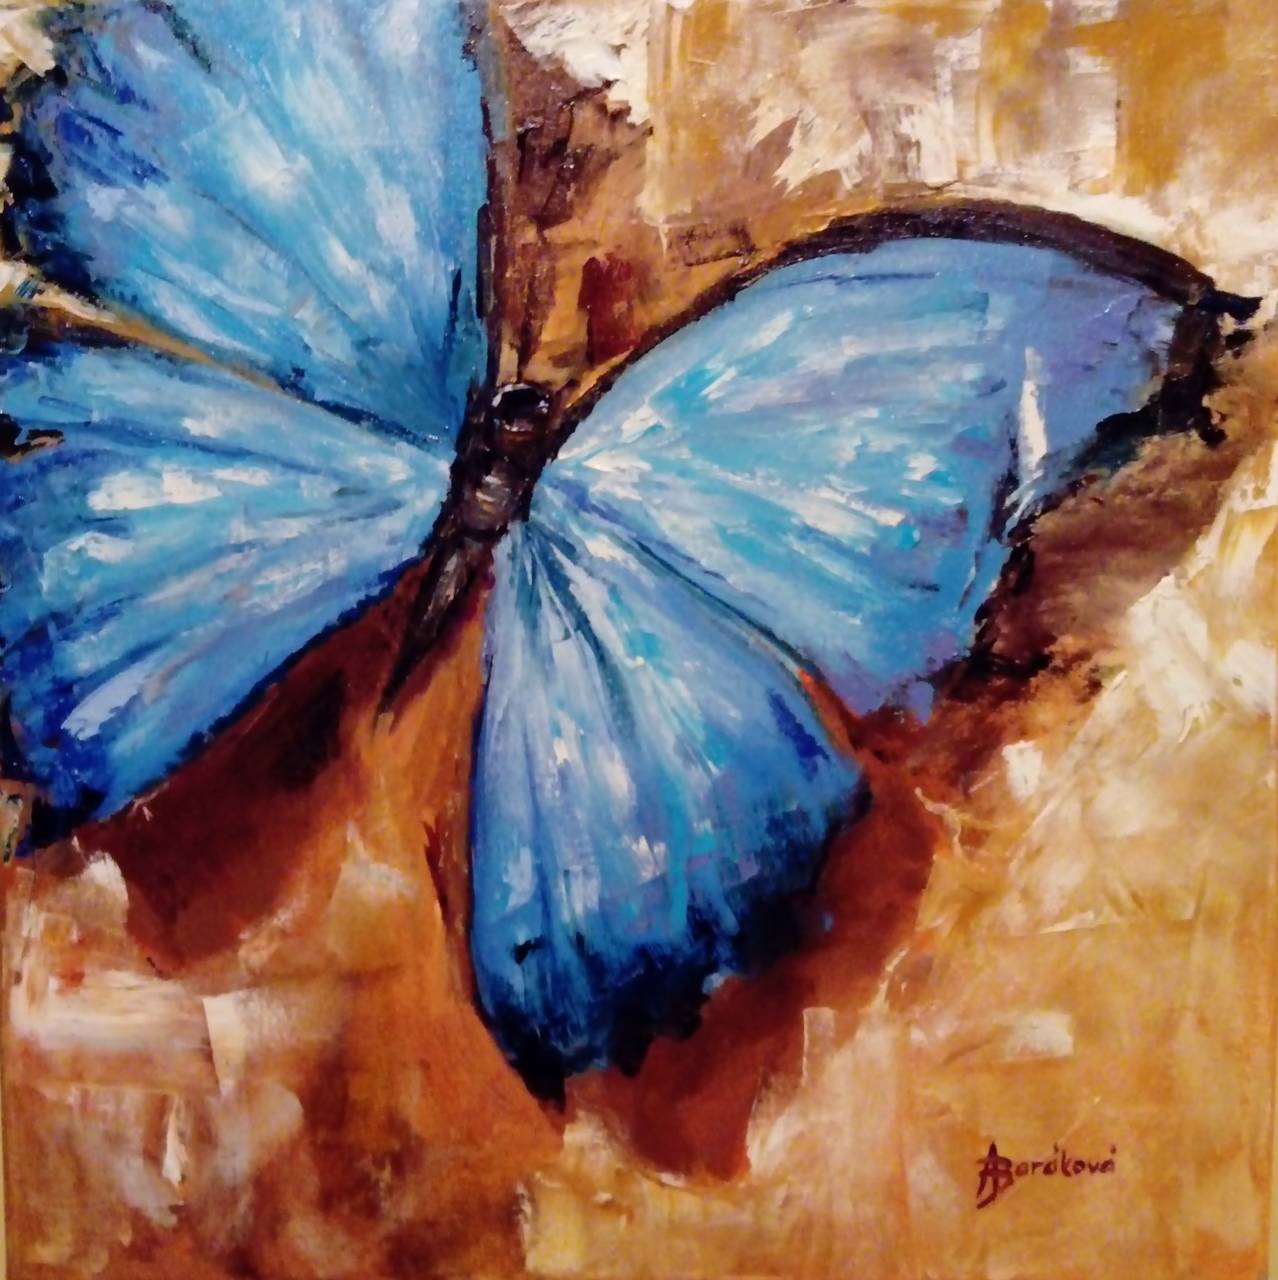 Blue butterfly 2